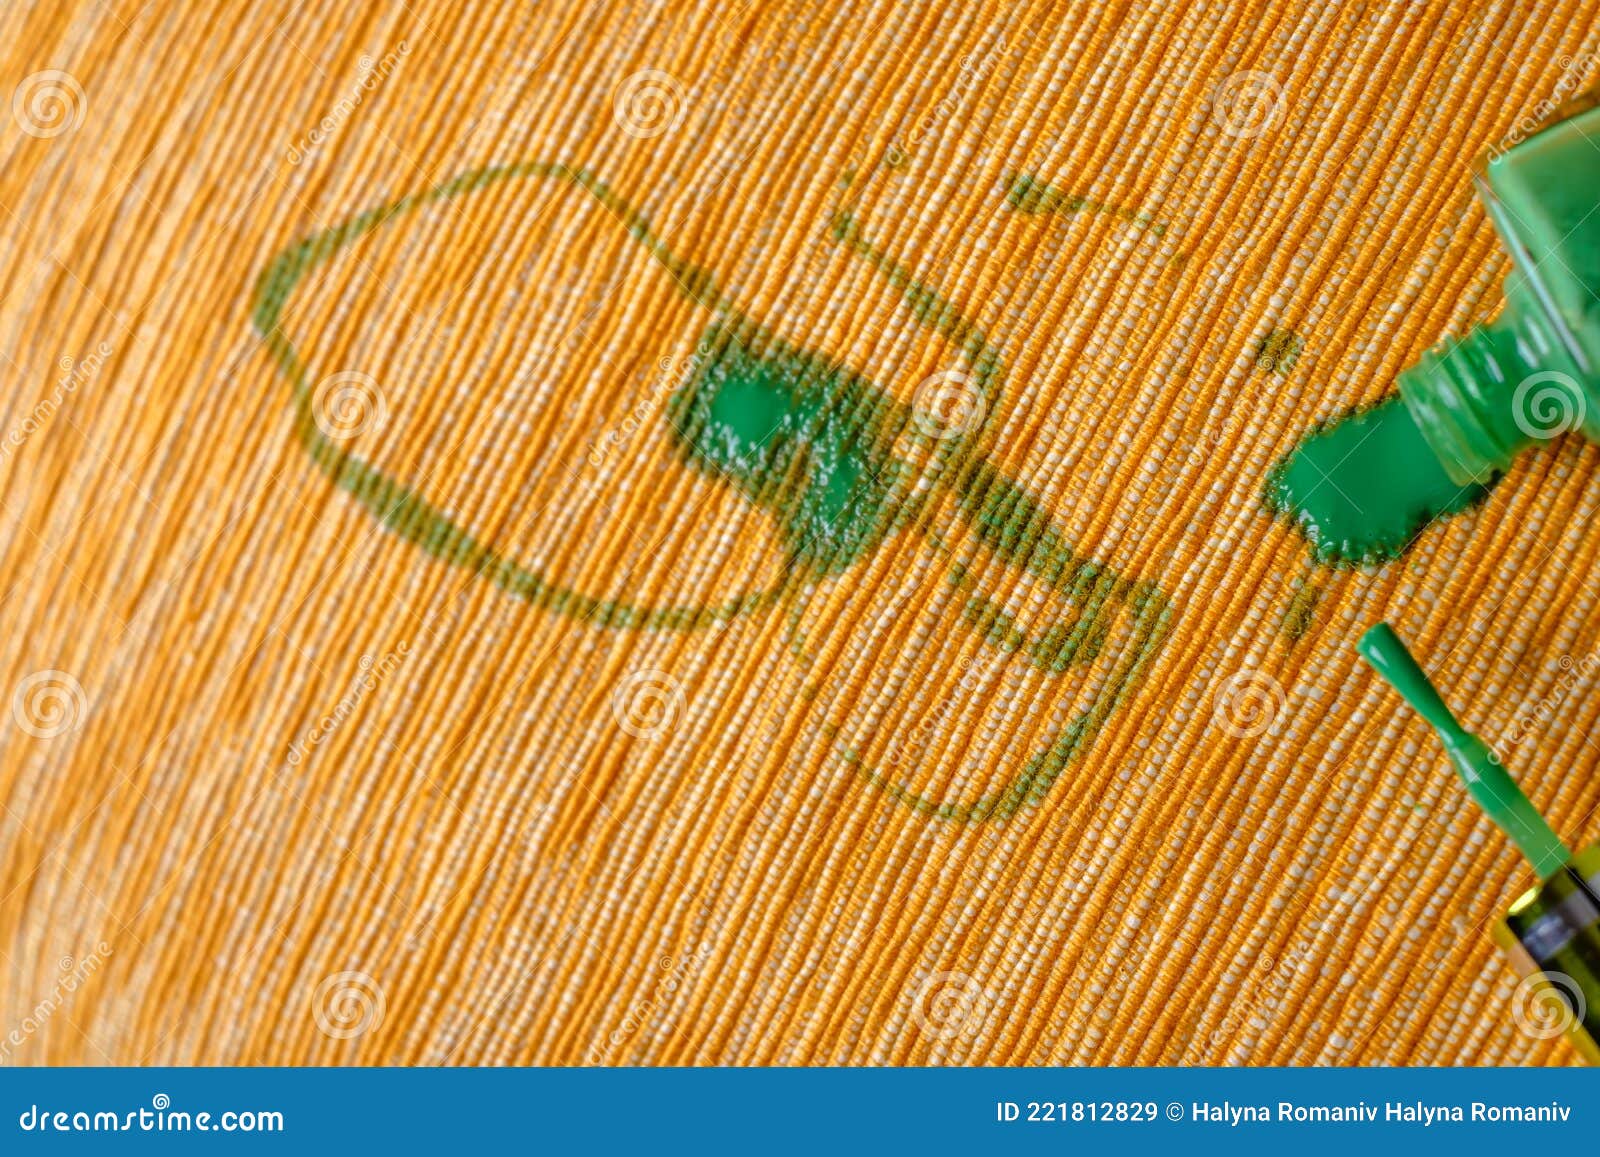 Manchas Verdes De Esmalte De Uñas Derramado Sobre El Tapicería Amarilla Del  Sofá. Vista Superior Imagen de archivo - Imagen de brillo, aislado:  221812829